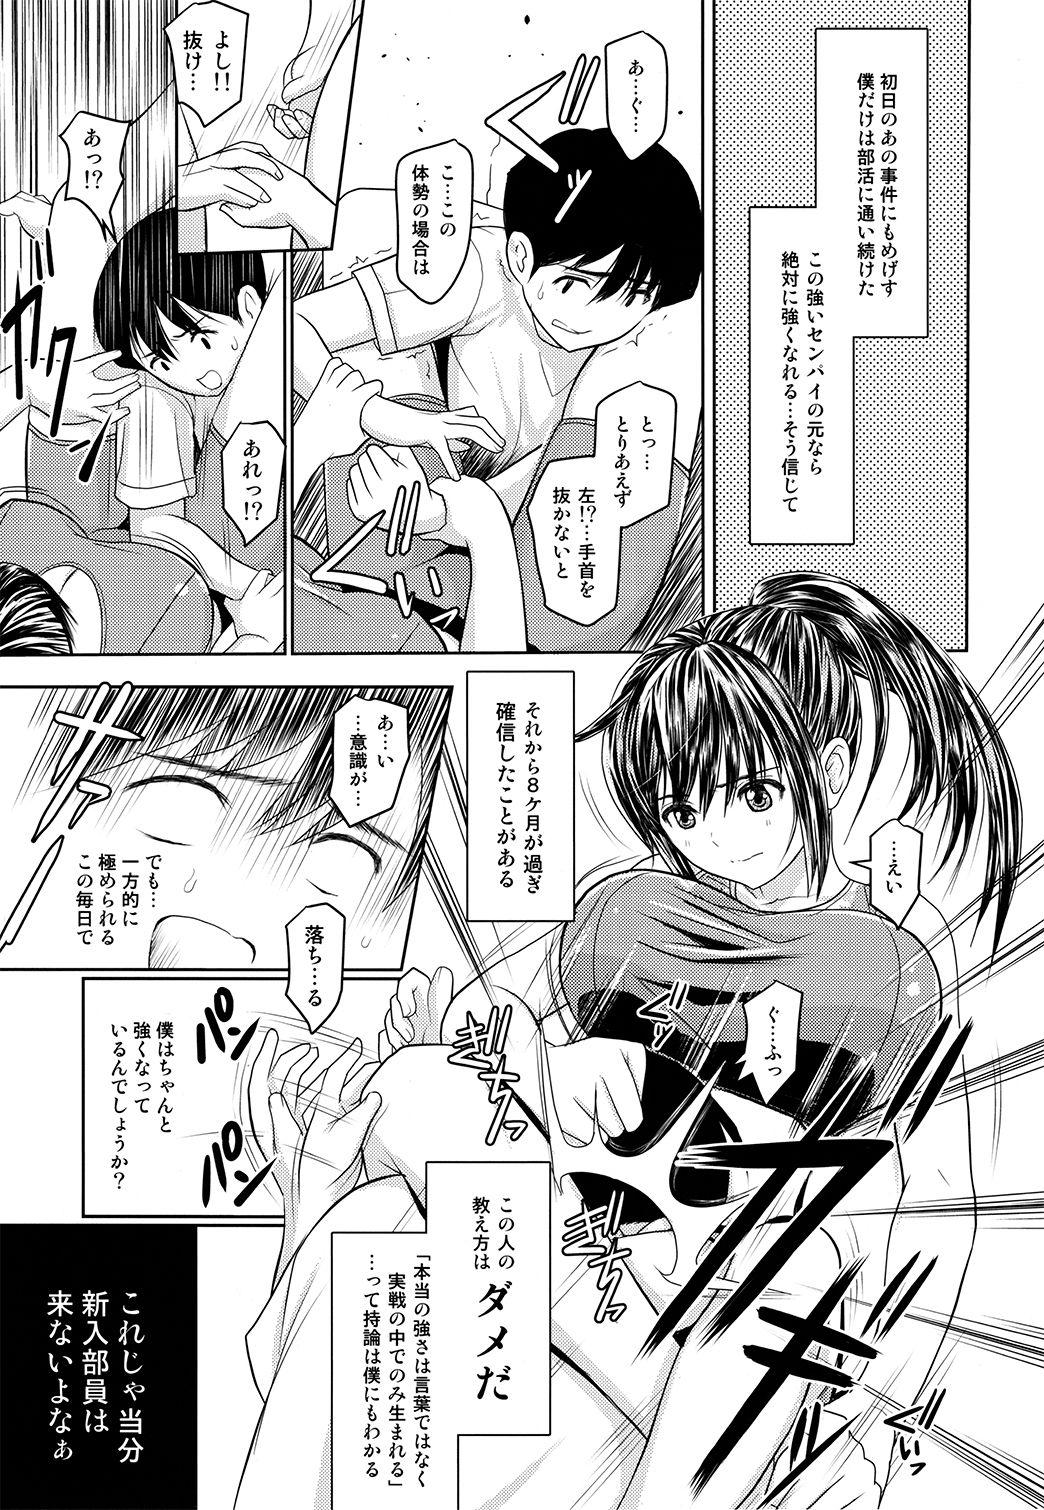 Humiliation Boku to senpai to himitsu no koto。VIRGIN FLIGHT:06 - Original Star - Page 8